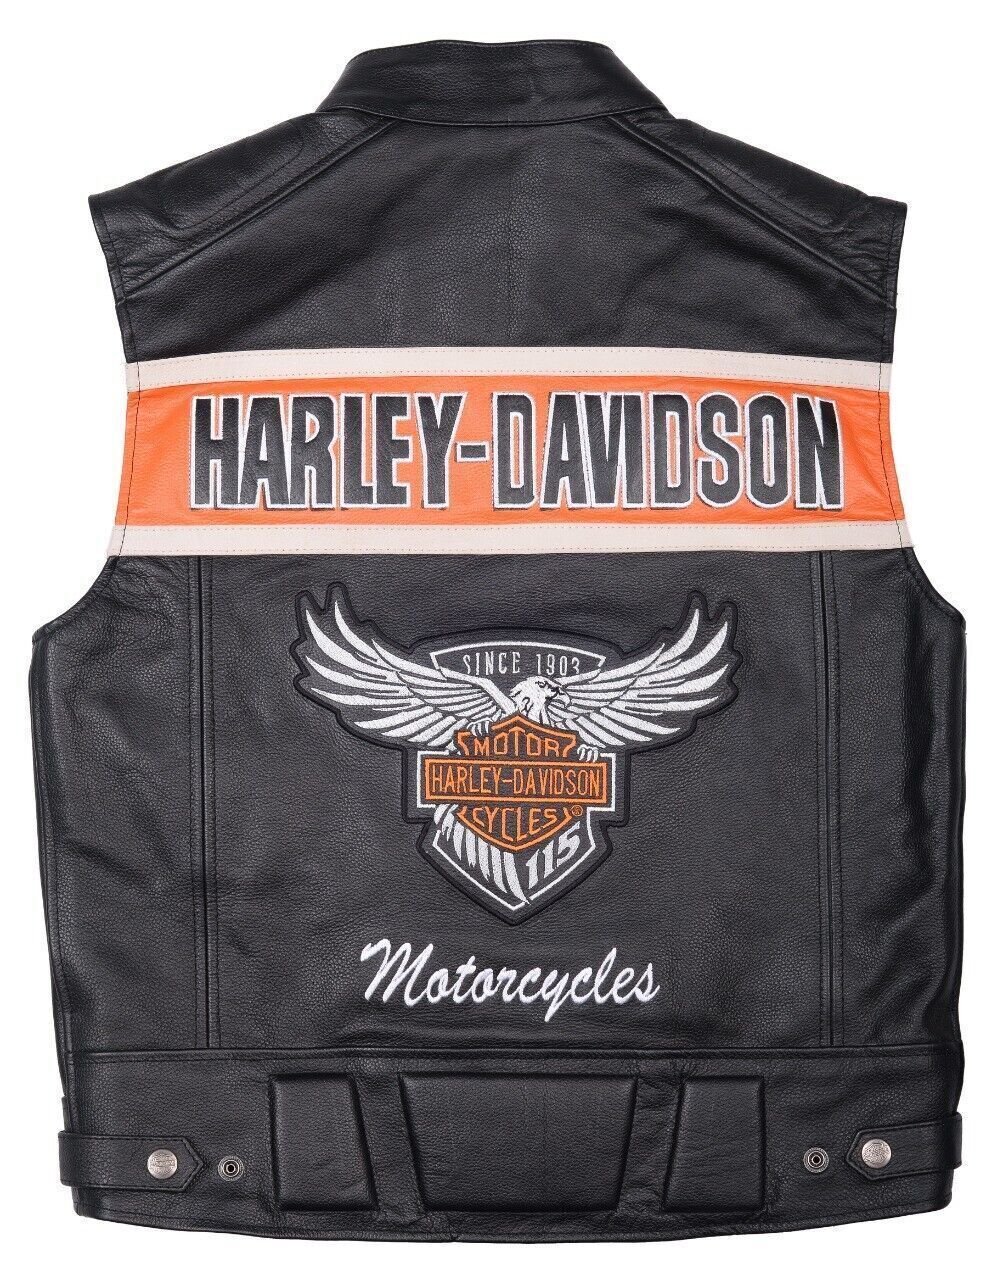 Harley davidson vest